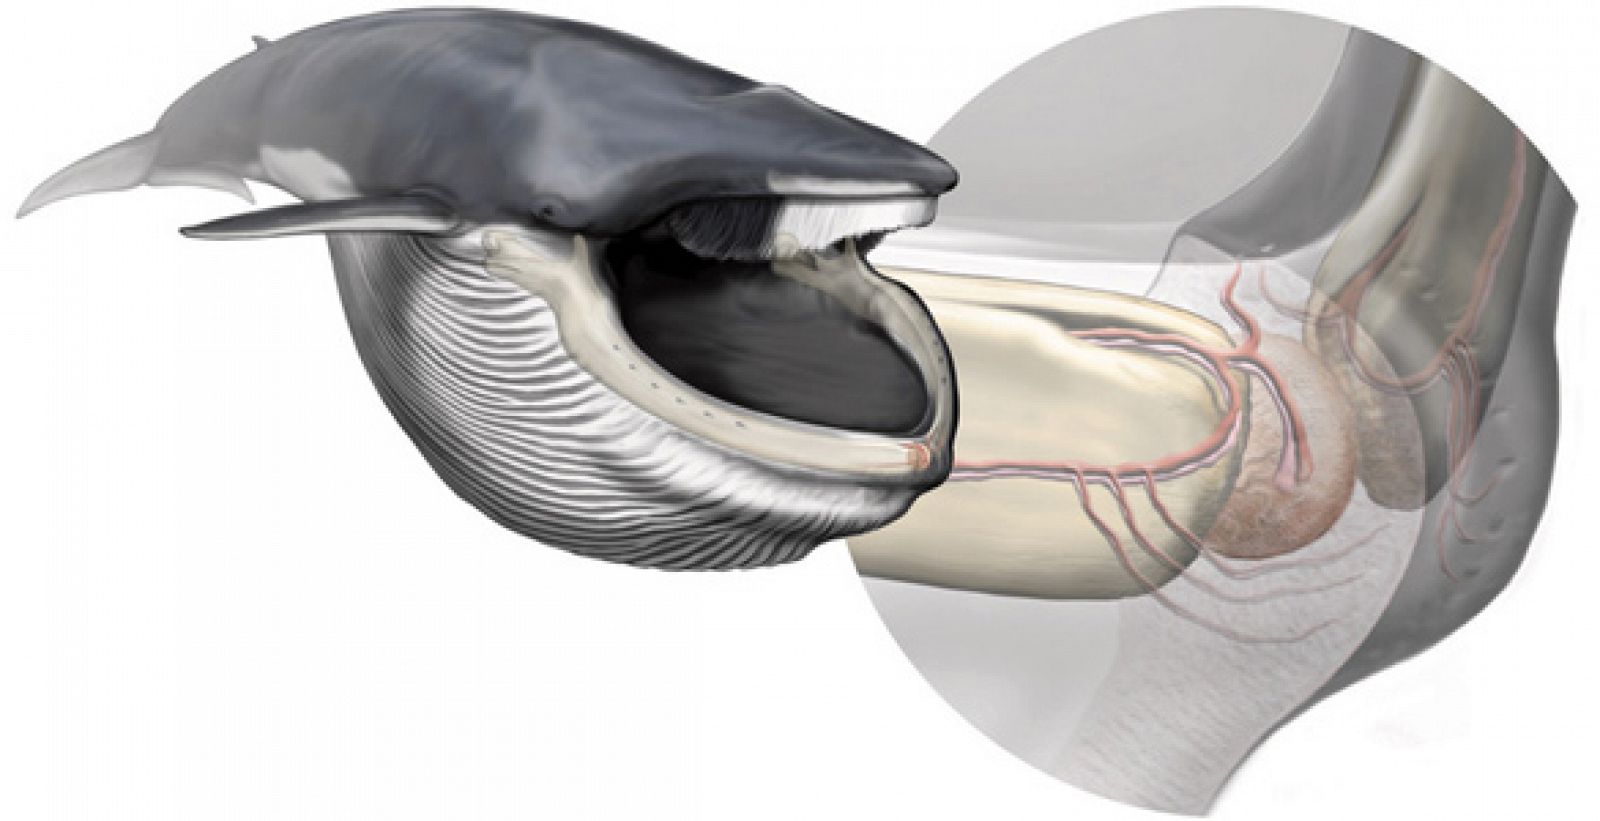 El órgano sensorial de la ballena azul, del tamaño de una naranja, está situado en la punta de la mandíbula